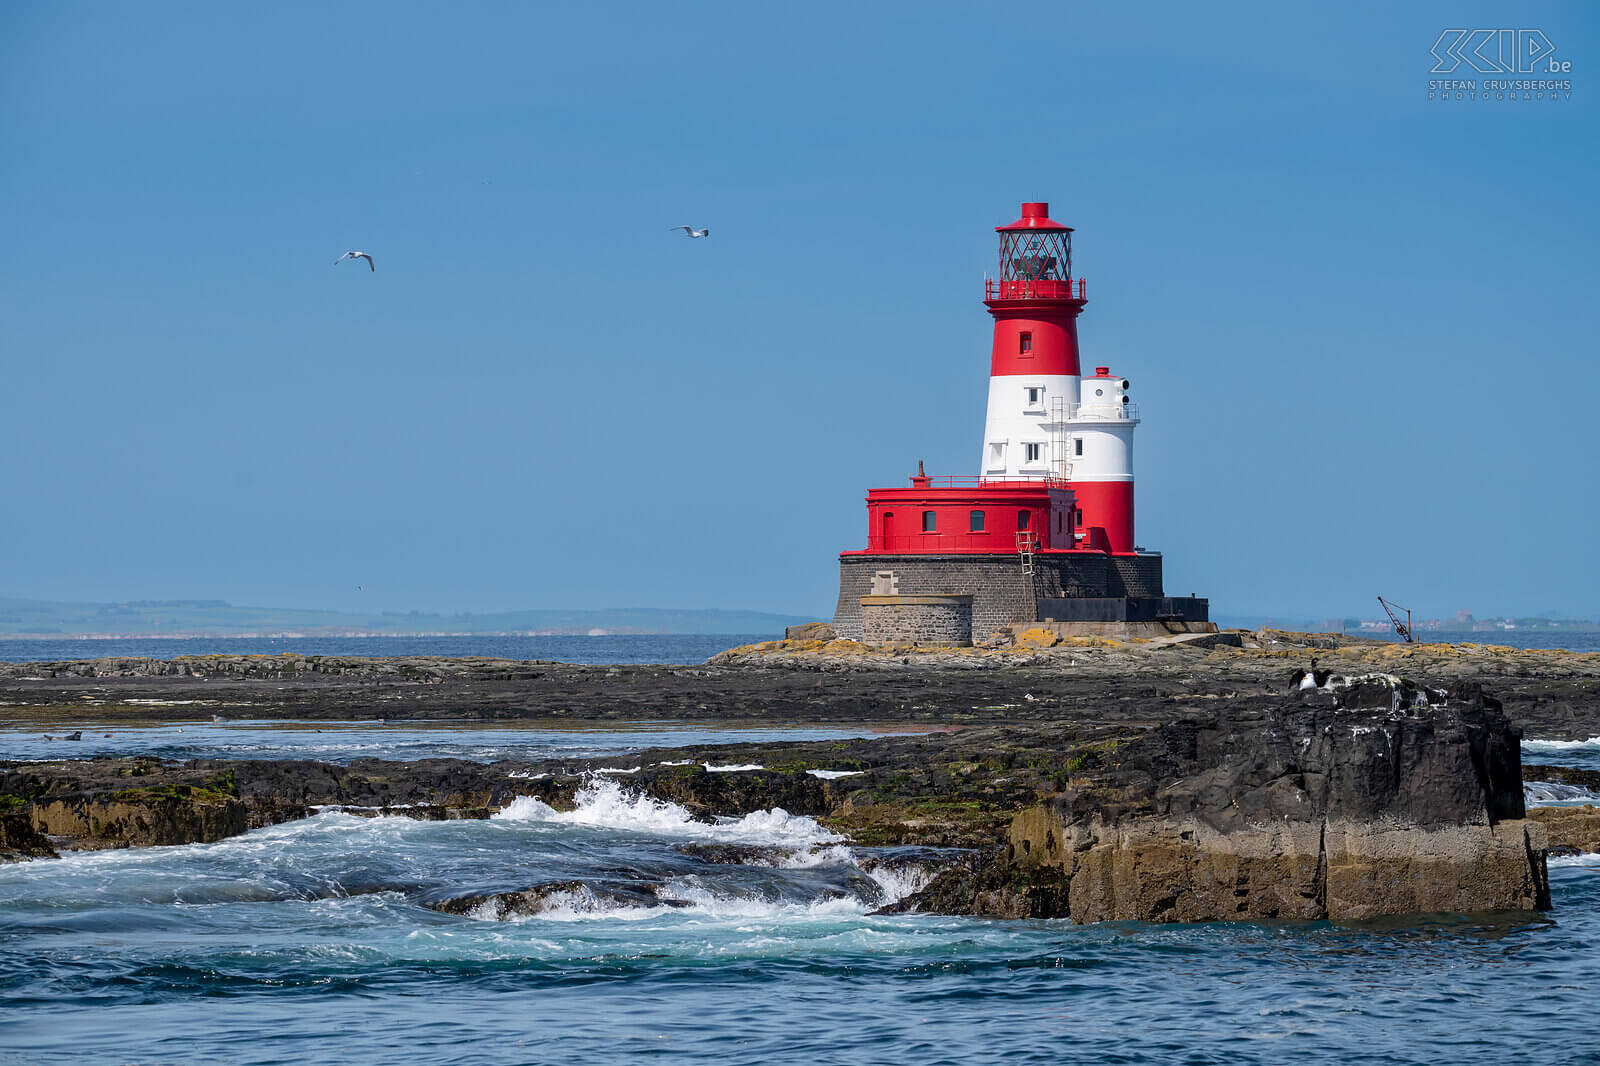 Farne Islands - Longstone lighthouse Op het eiland Longstone staat er een nog steeds werkende en karakteristieke, rood met witte vuurtoren die werd gebouwd in 1826. Stefan Cruysberghs